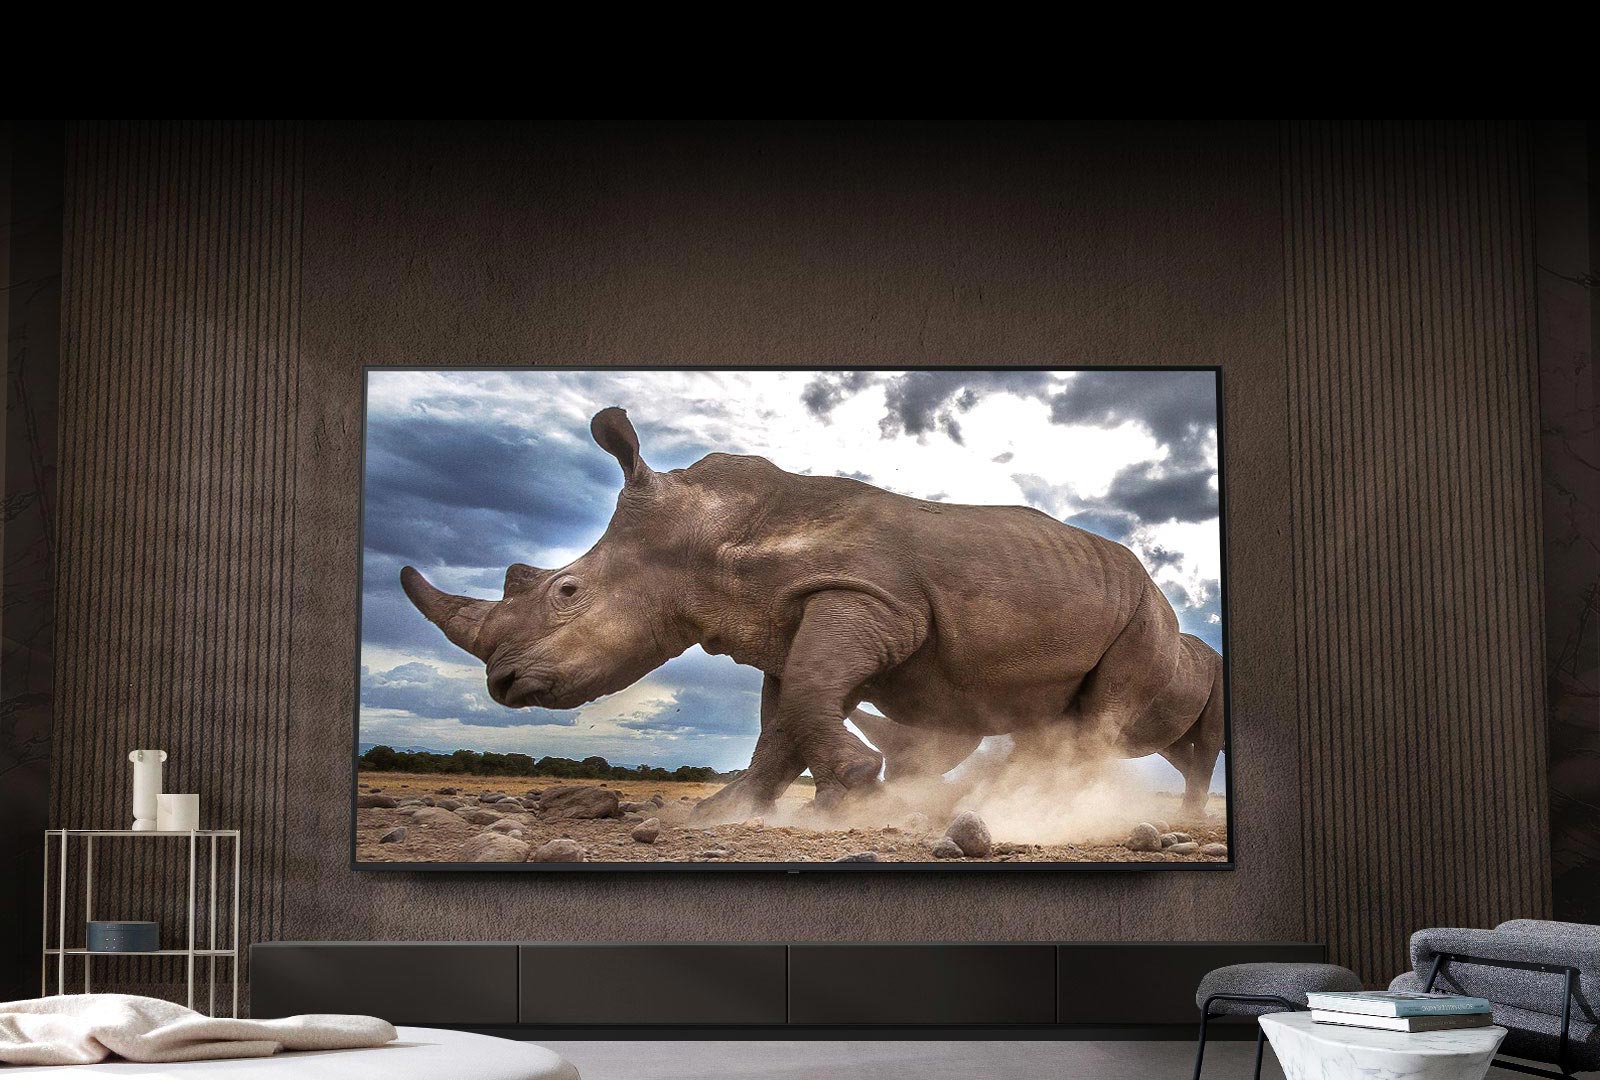 Auf einem Ultra Big LG-Fernseher, der an der braunen Wand eines Wohnzimmers montiert ist, umgeben von cremefarbenen modularen Möbeln, wird ein Nashorn in einer Safari-Umgebung gezeigt.